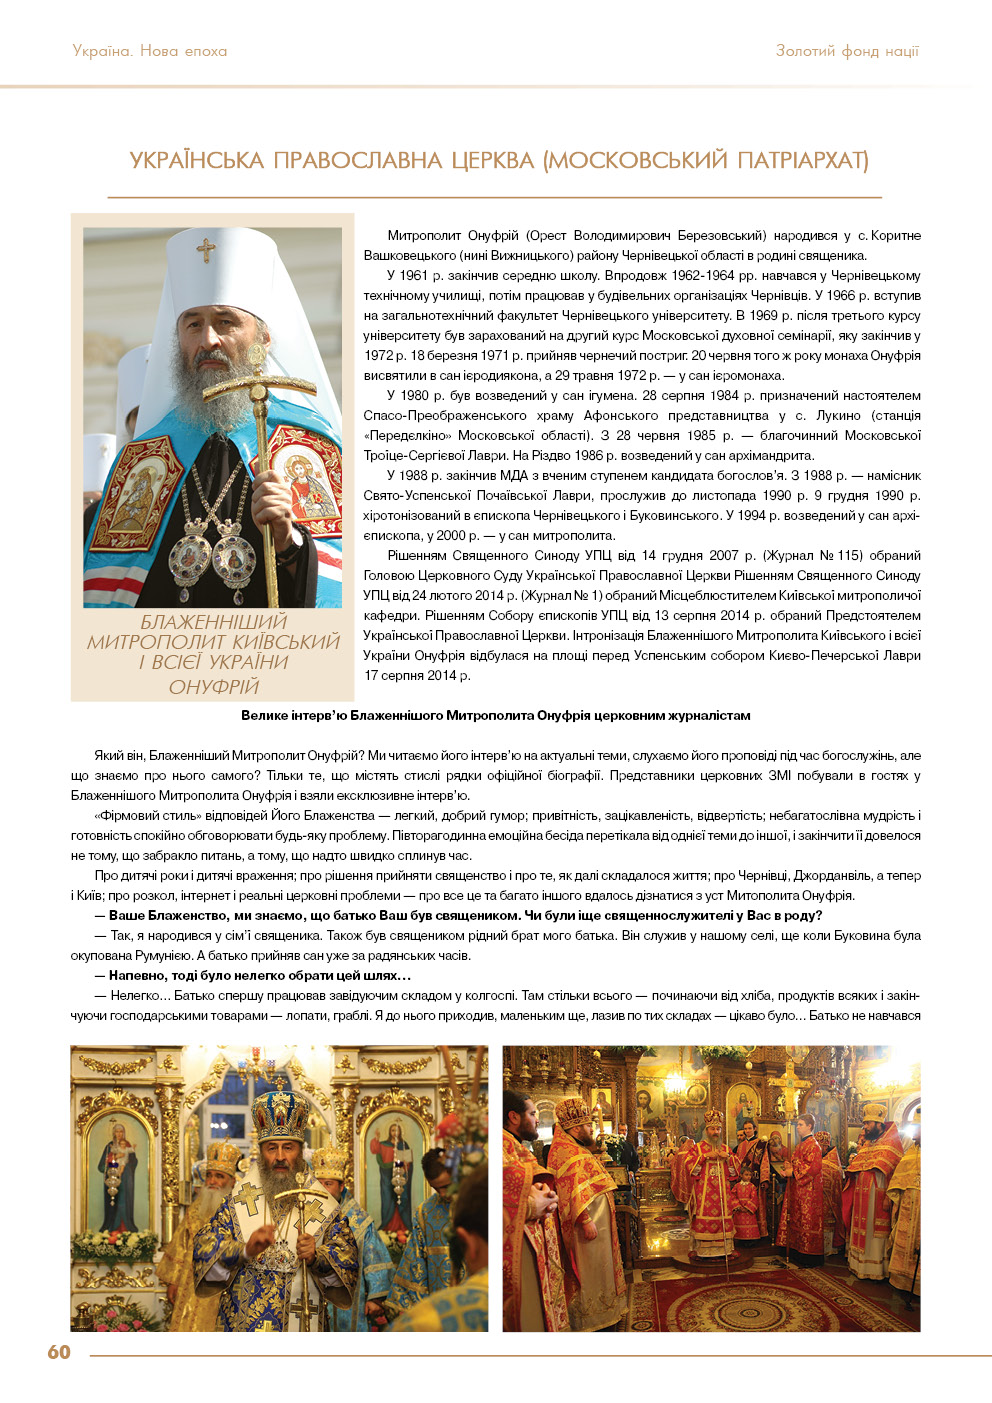 Українська православна церква (Московський патріархат) - Блаженніший Митрополит Київський і всієї України Онуфрій